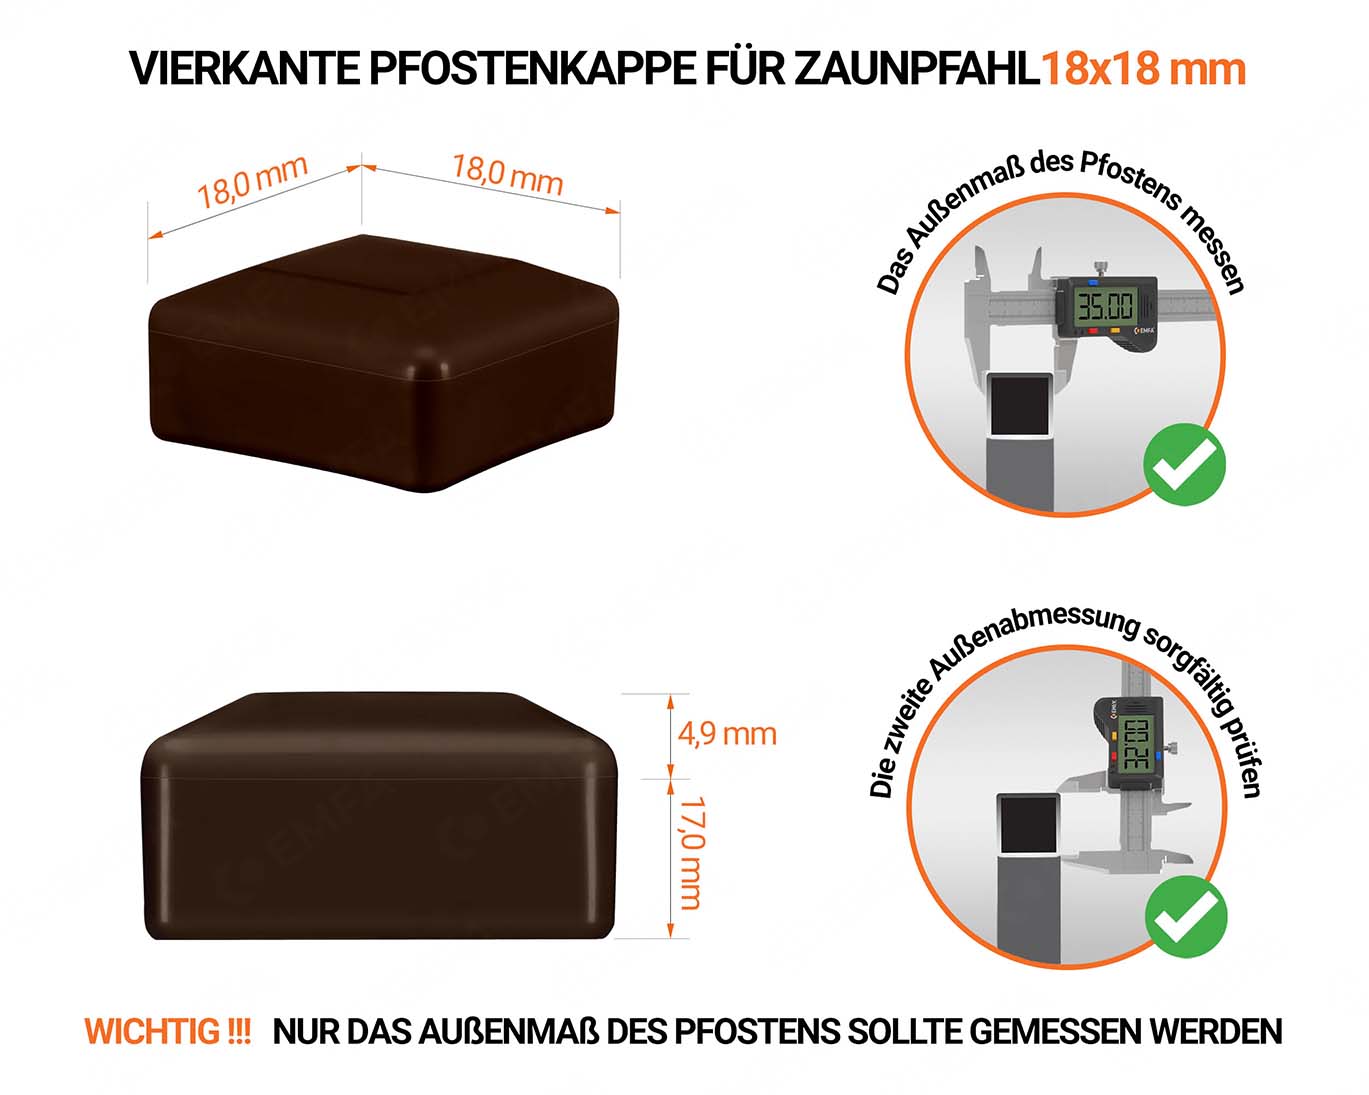 Braune Pfostenkappen vierkant für Pfostenmaße 18x18 mm  mit technischen Abmessungen und Anleitung für korrekte Messung